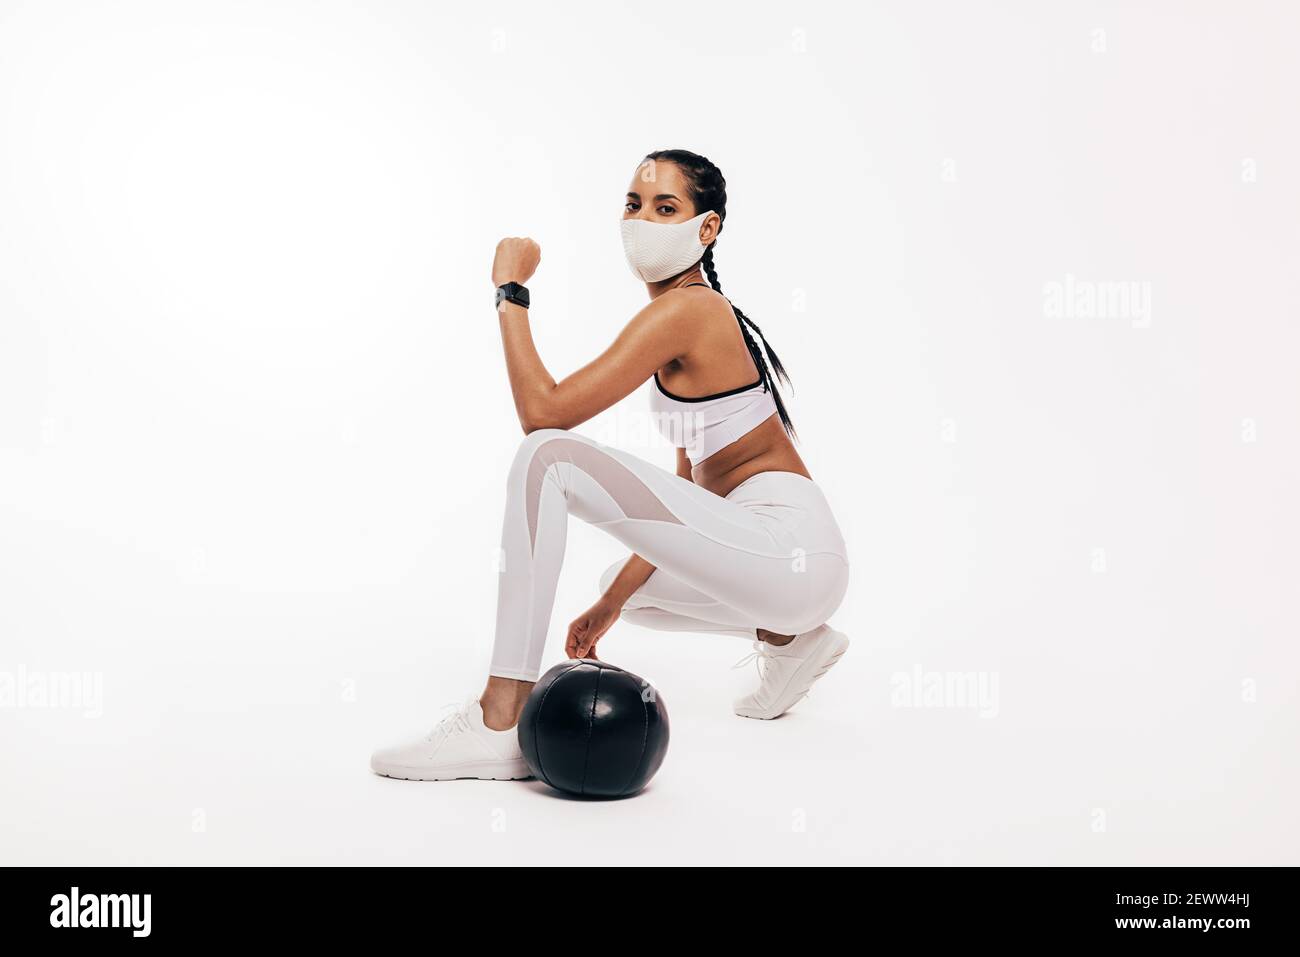 Junge Frau mit Gesichtsmaske tun Fitness-Training mit einem Medizinball Stockfoto